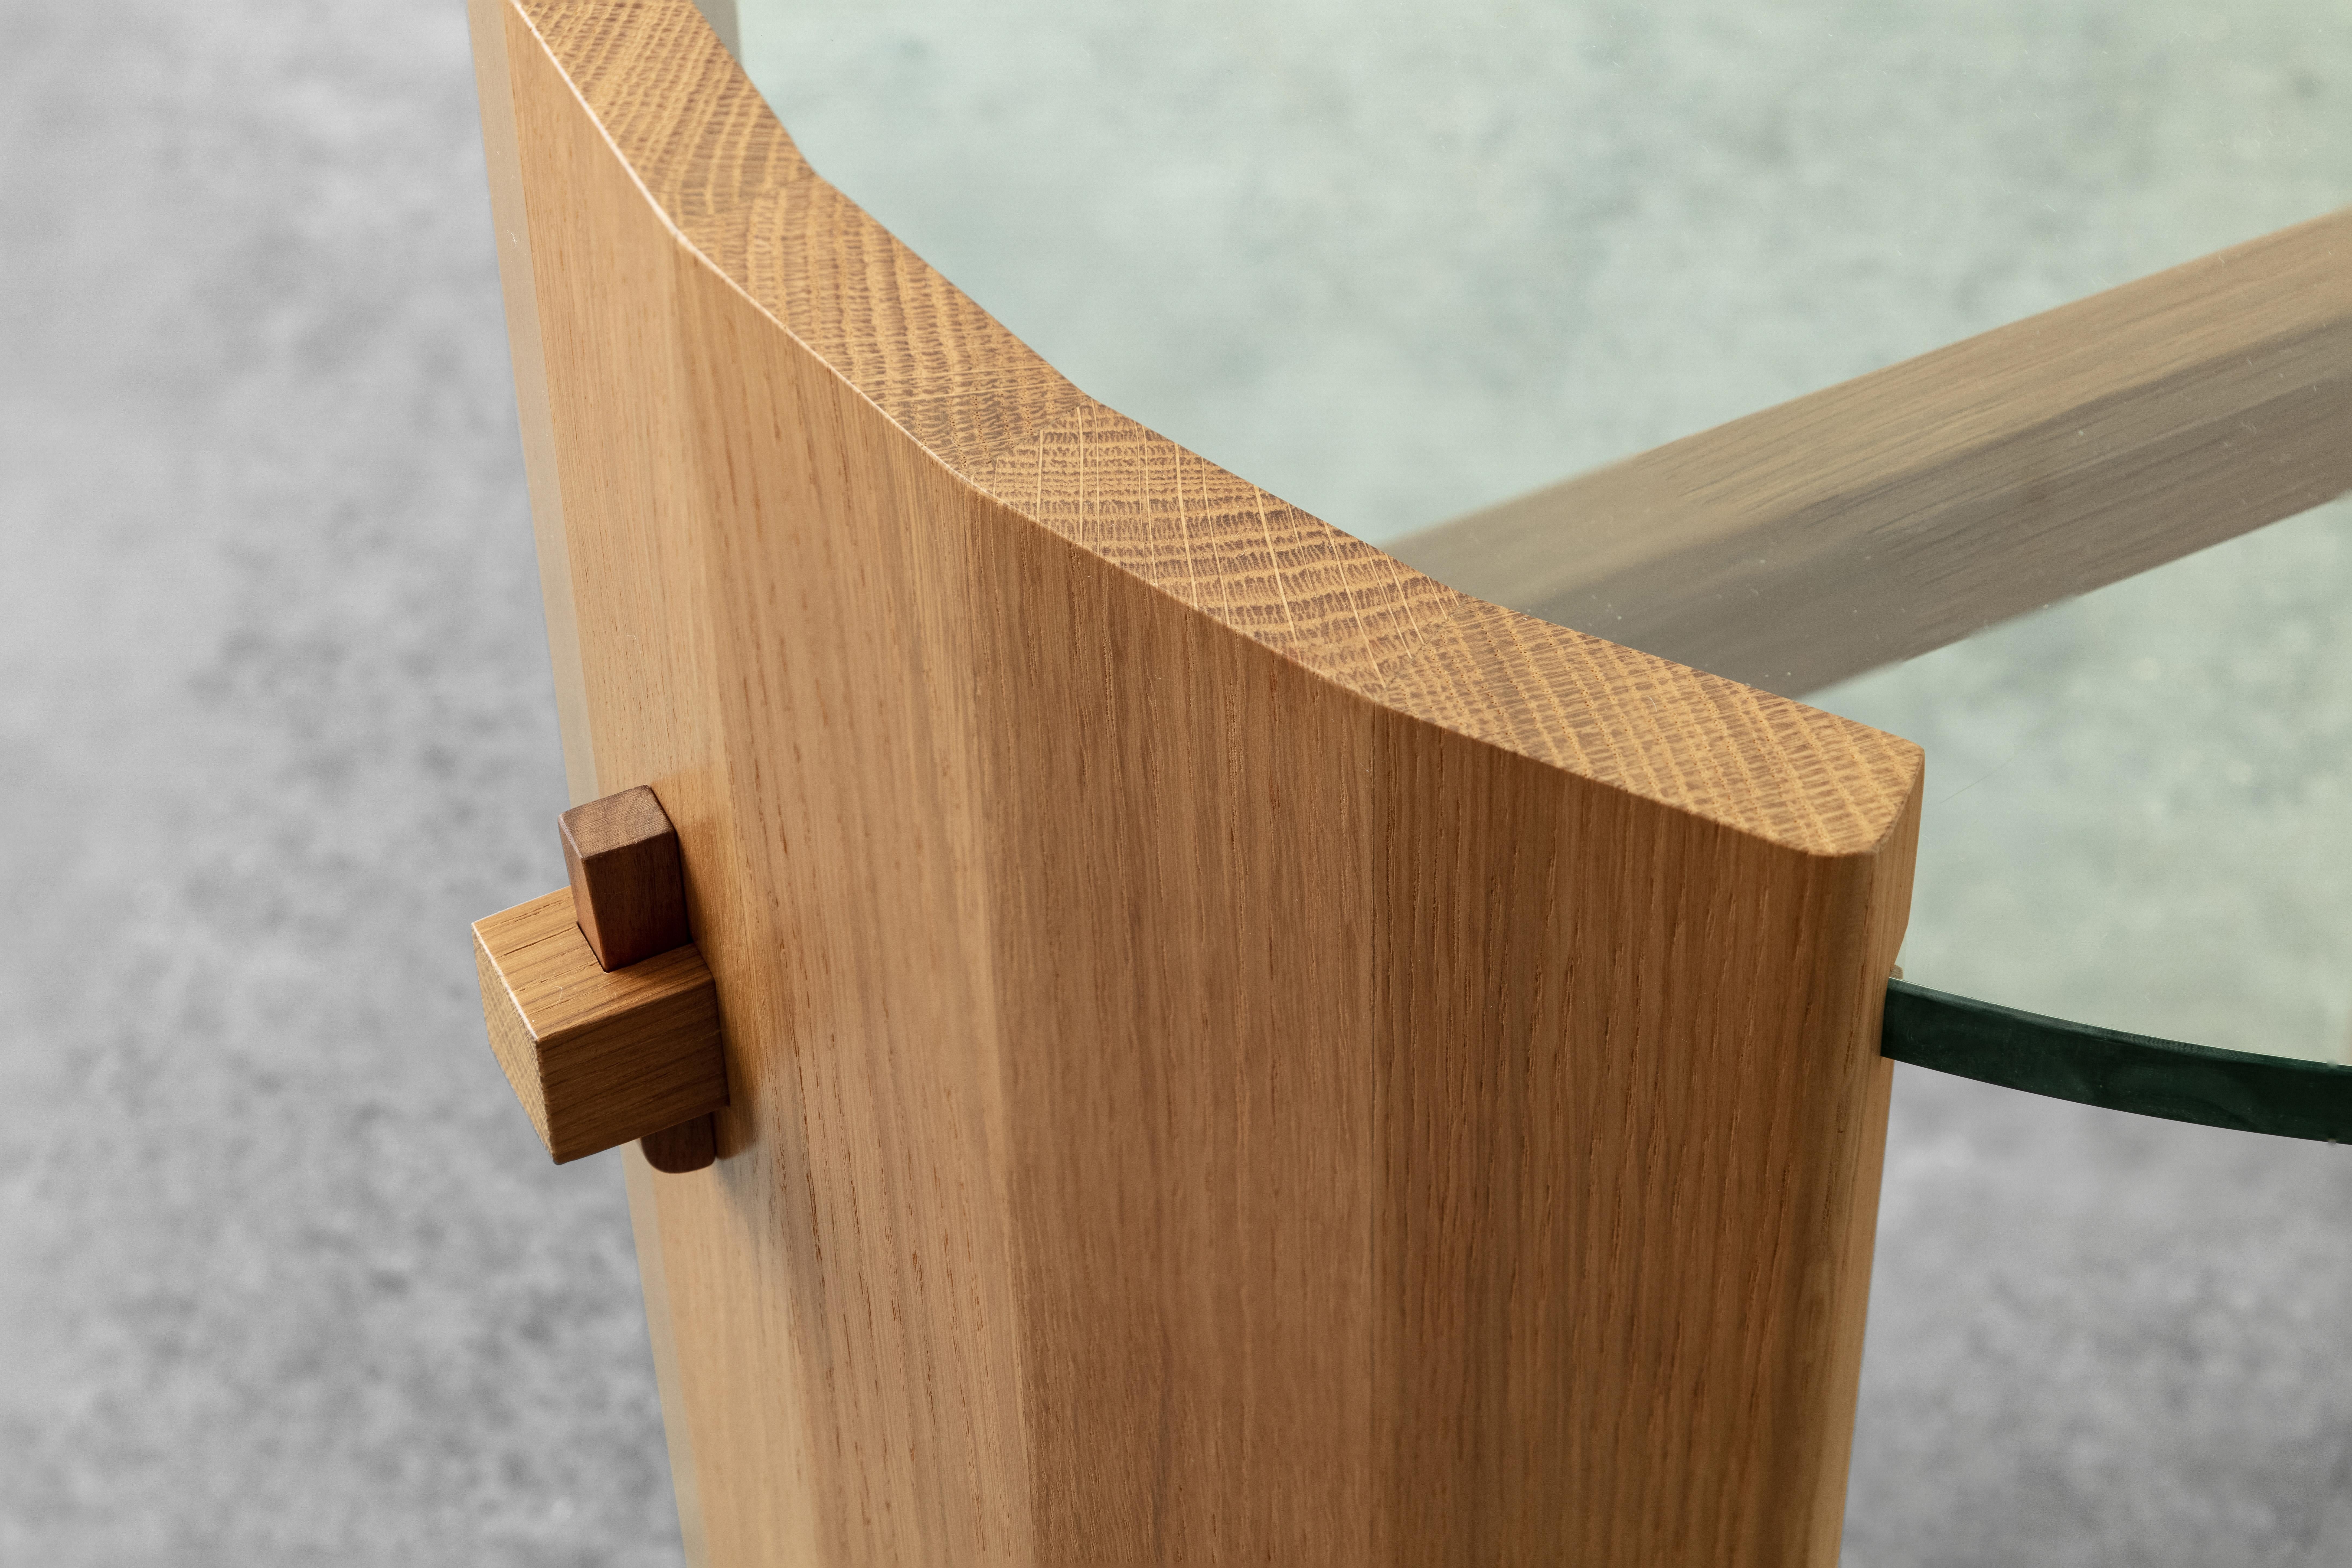 Der Coopered Beistelltisch ist ein eleganter Massivholz
Stück, das die Holzbearbeitung feiert und einige der
seine traditionellsten Tischlereitechniken. Wie der Name
suggeriert, sind die Seiten wie ein Fass gewölbt, damit die
Jede Facette folgt